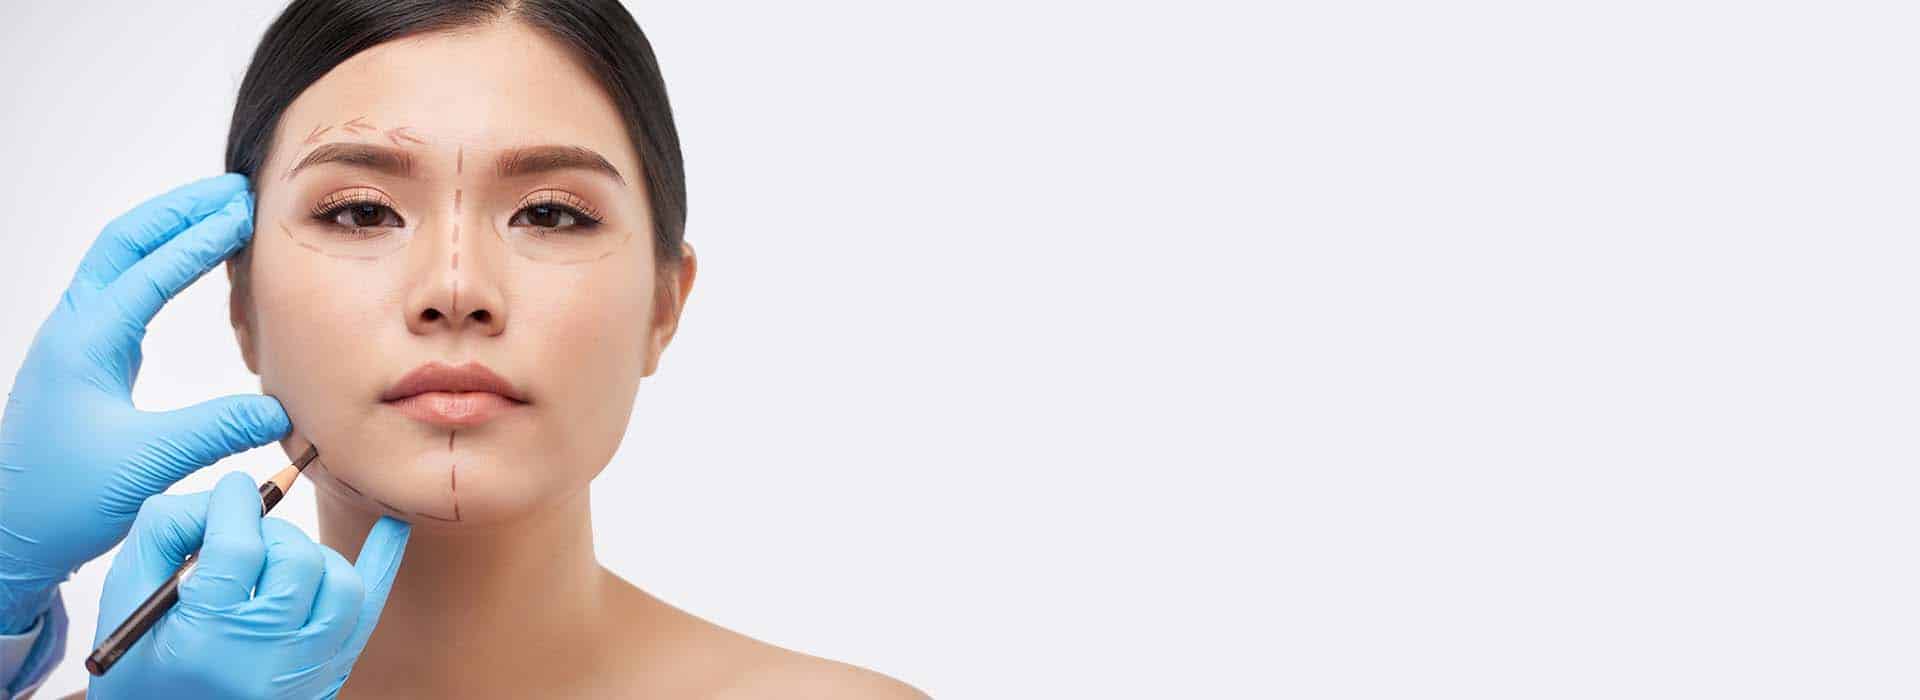 Asimetría facial: Causas, cirugía y resultados